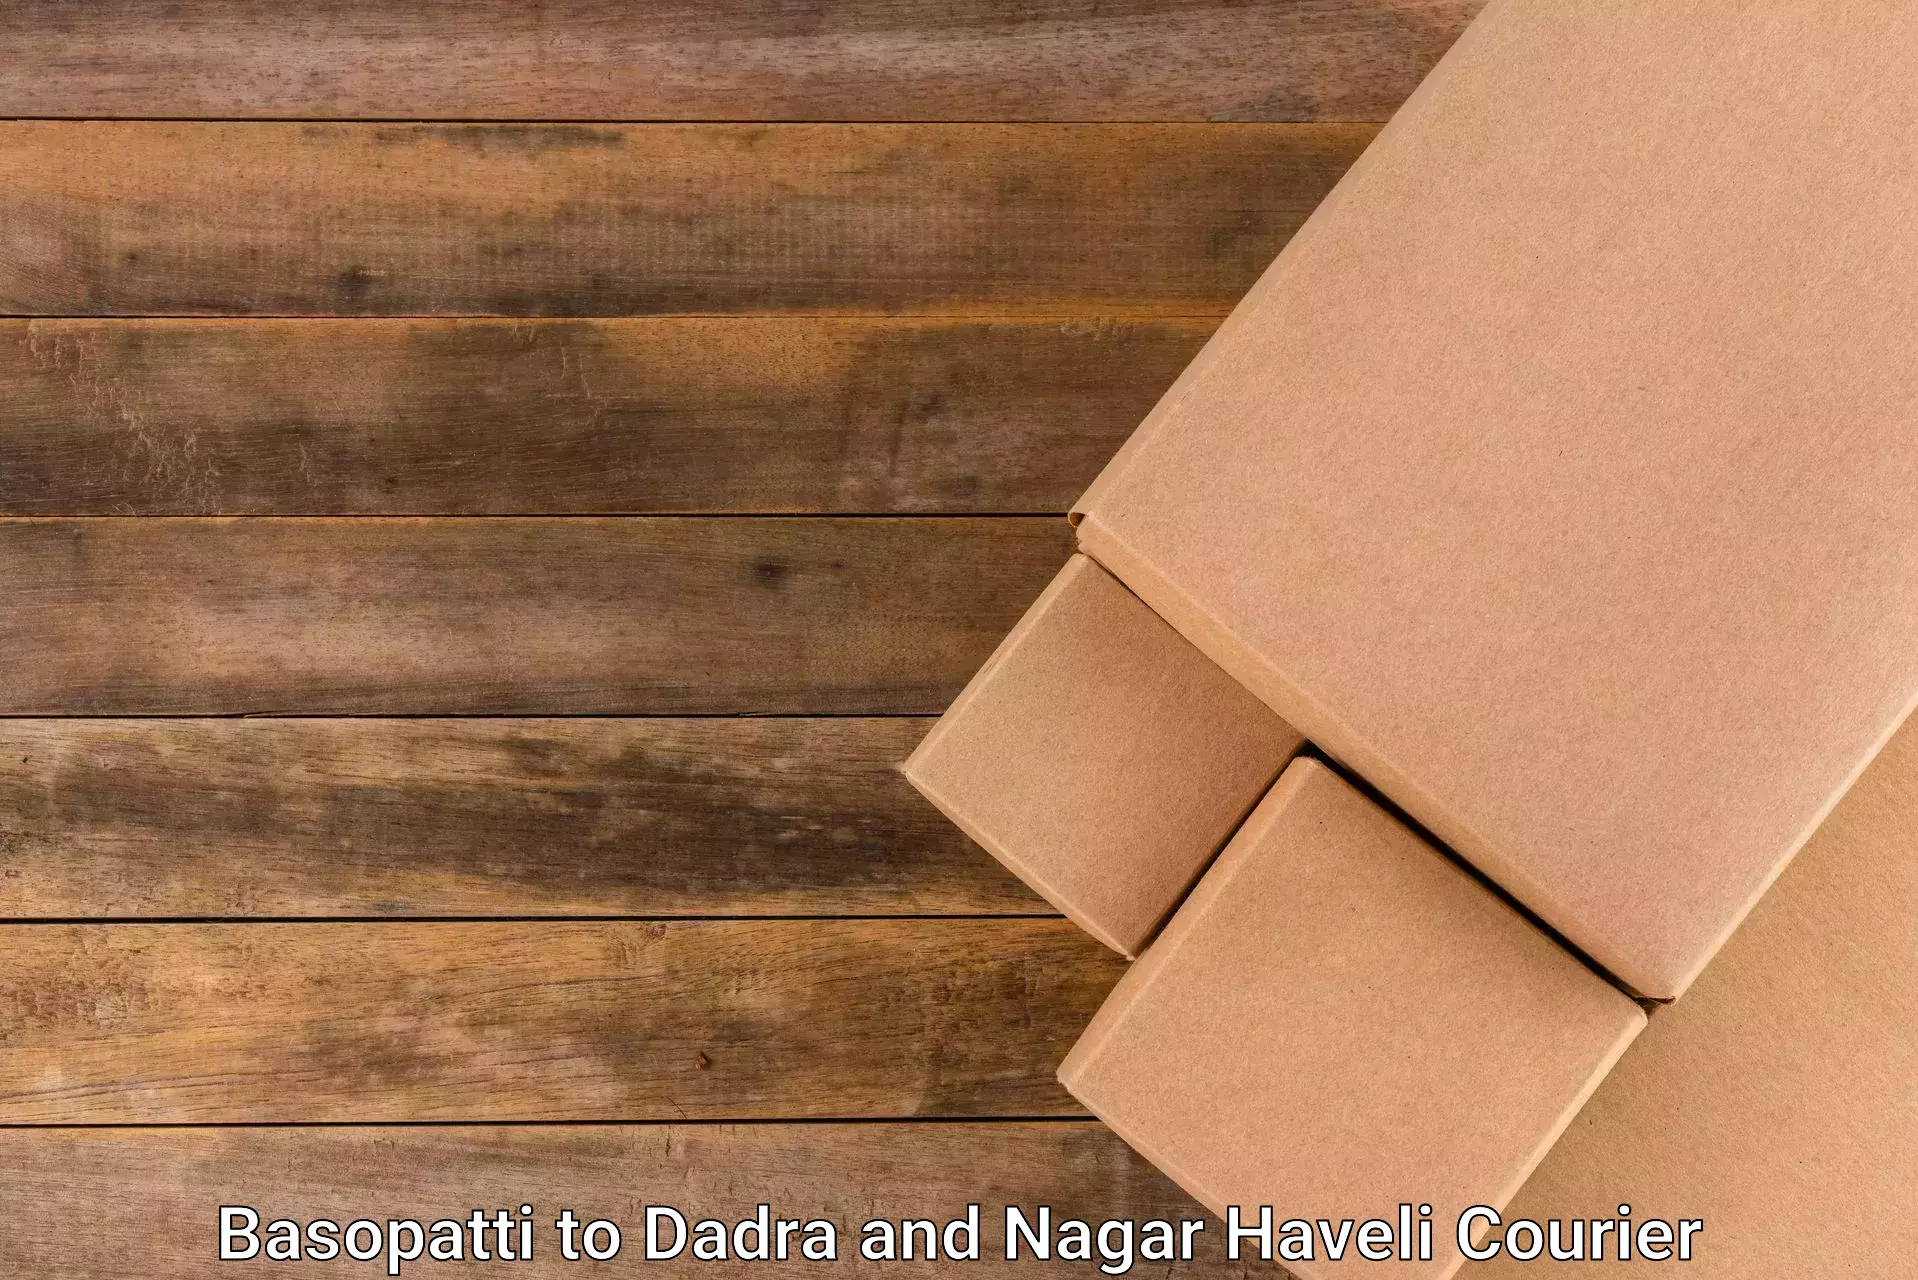 Courier app Basopatti to Dadra and Nagar Haveli